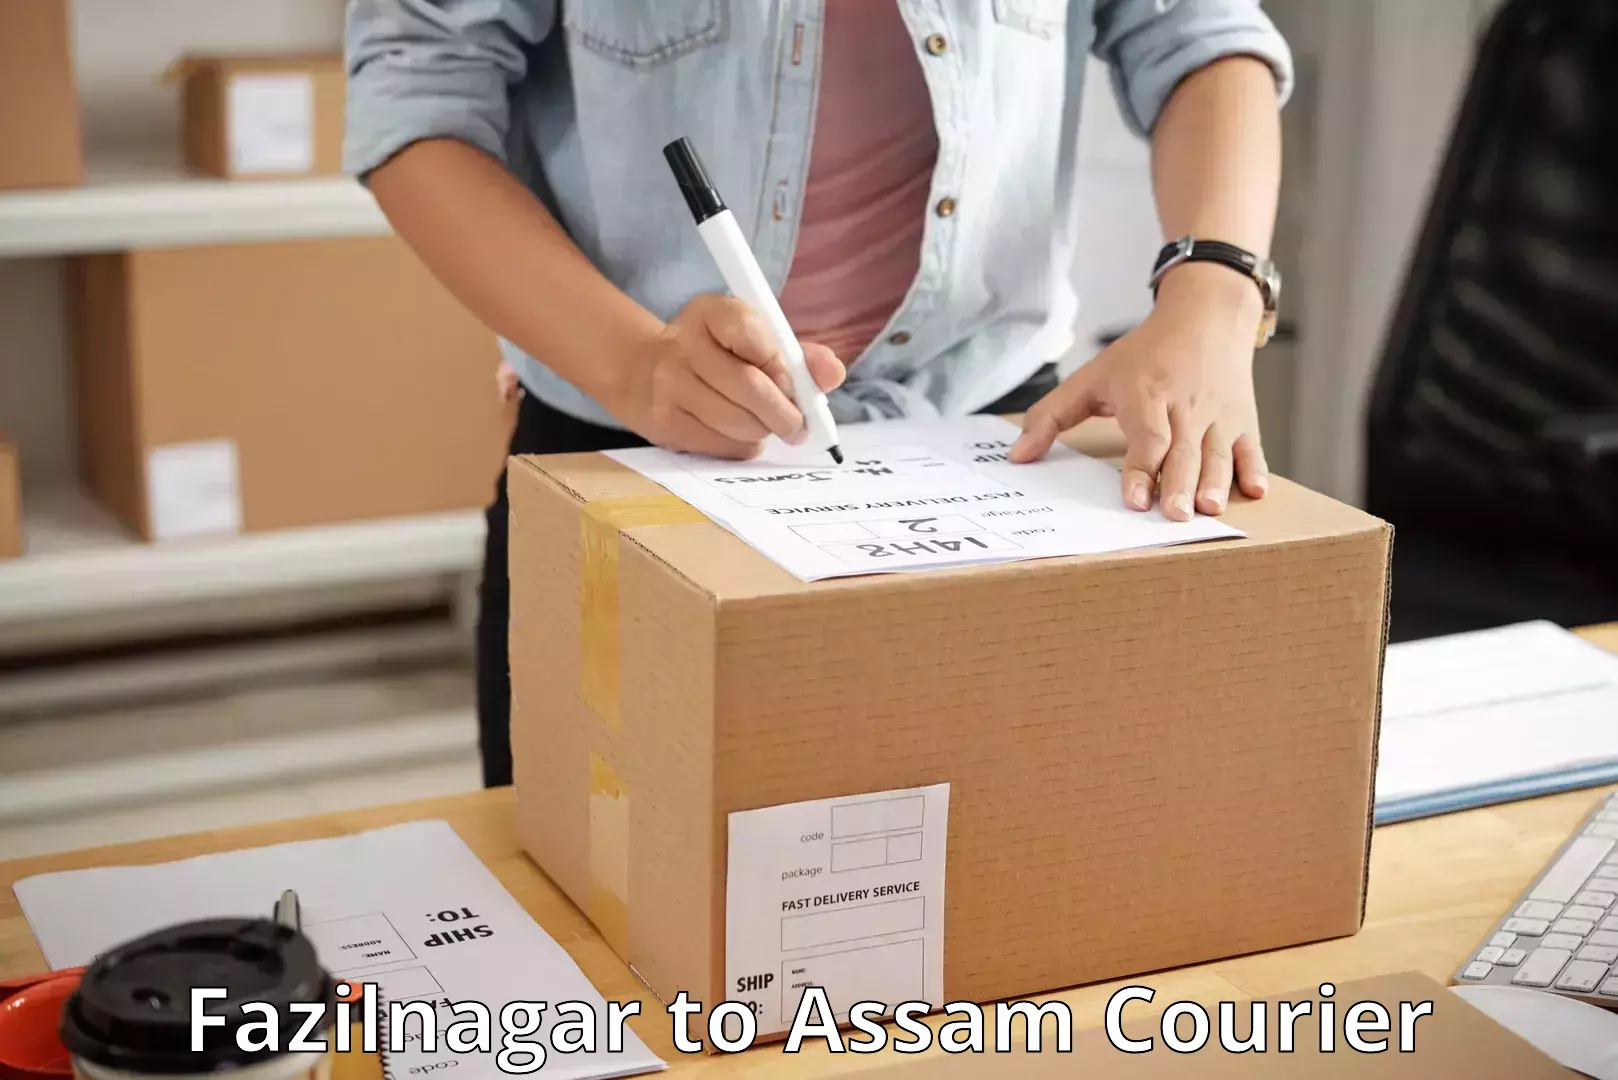 Bulk courier orders Fazilnagar to Assam